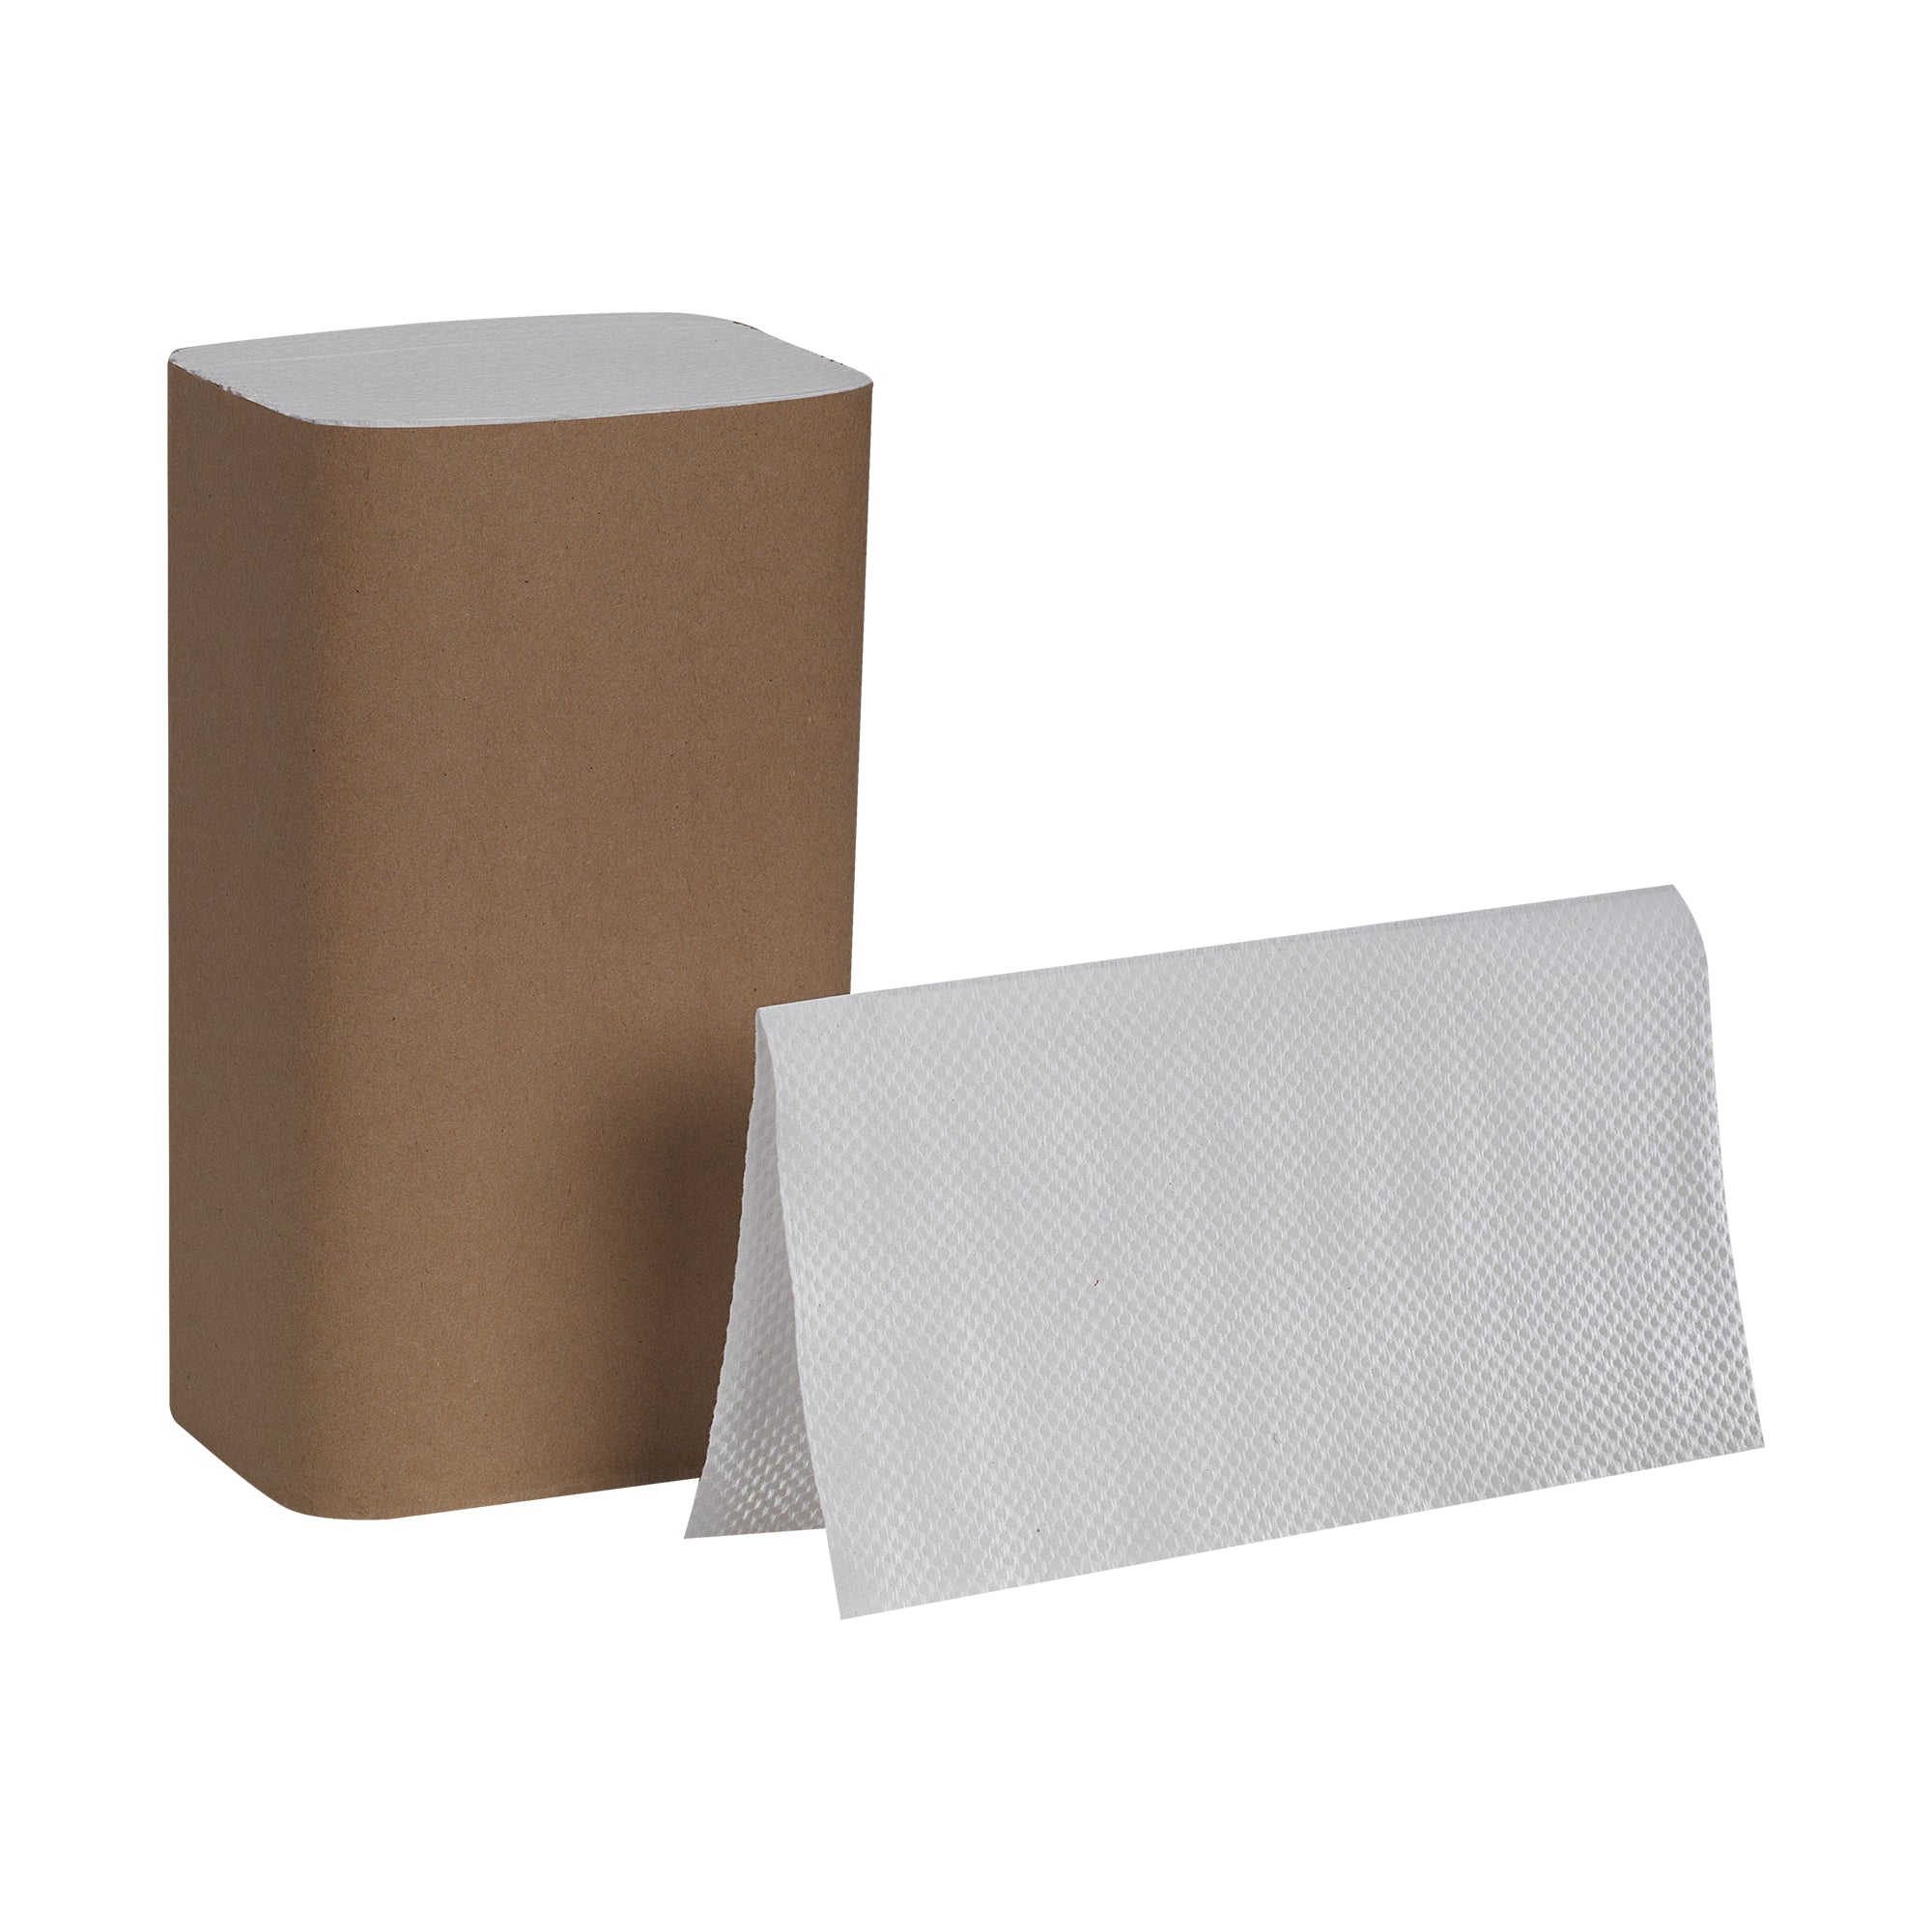 מגבות נייר ממוחזרות PACIFIC BLUE BASIC™ מקופלות, לבן, (16 חבילות של 250 גליונות סהכ 4000 גליונות)